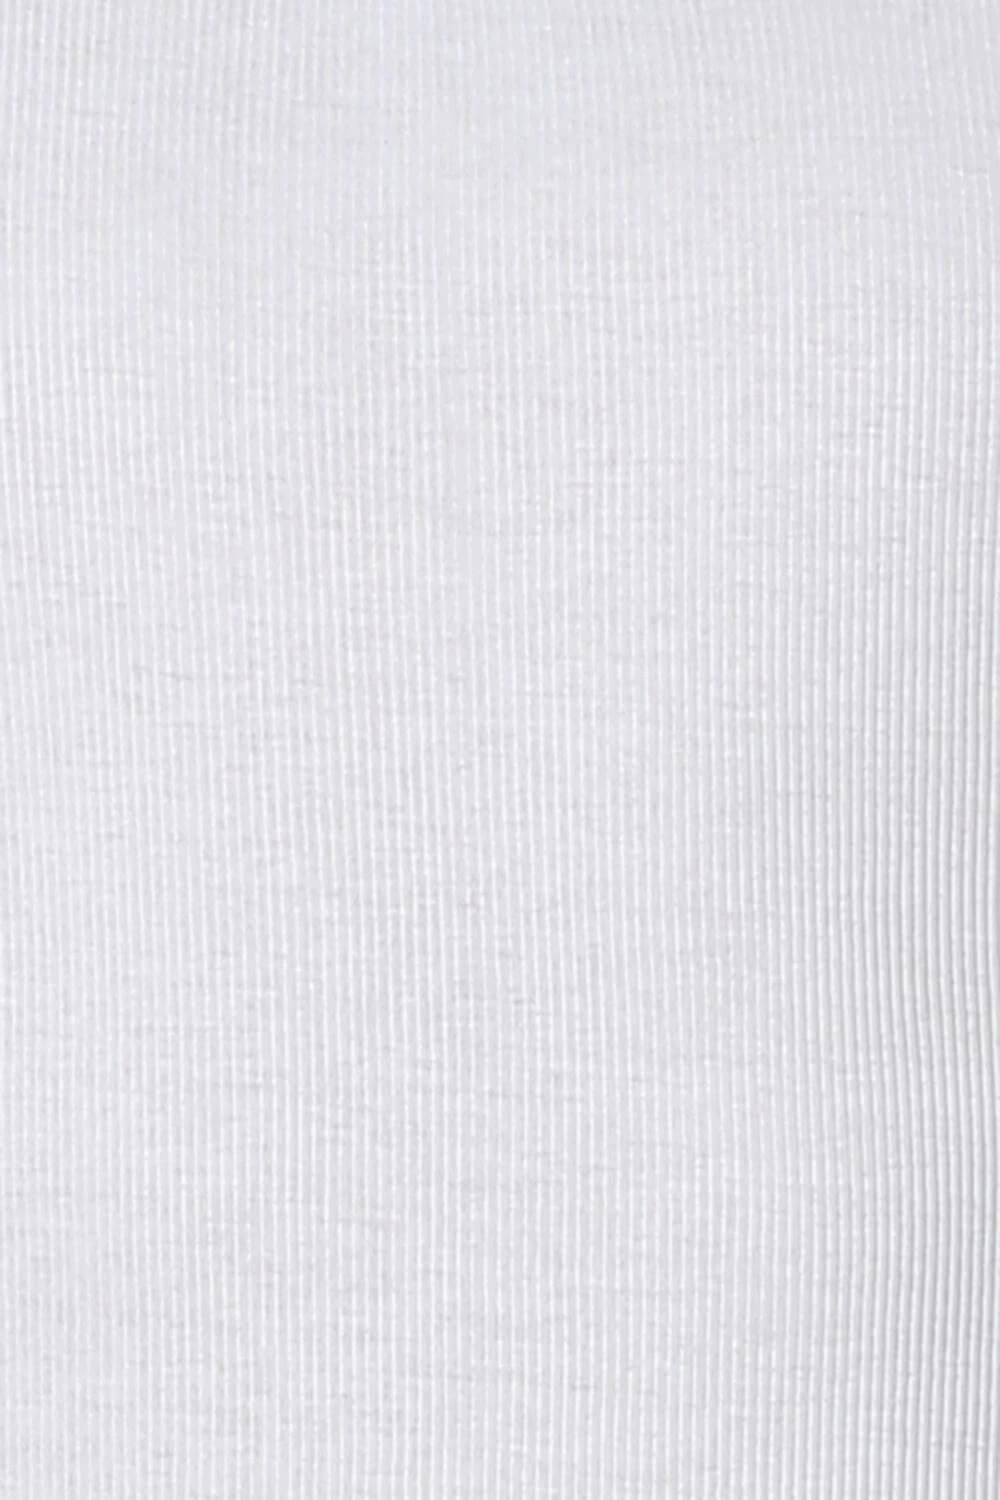 Van Heusen White Ribbed Undershirt for Men #10073 [Pack of 2]